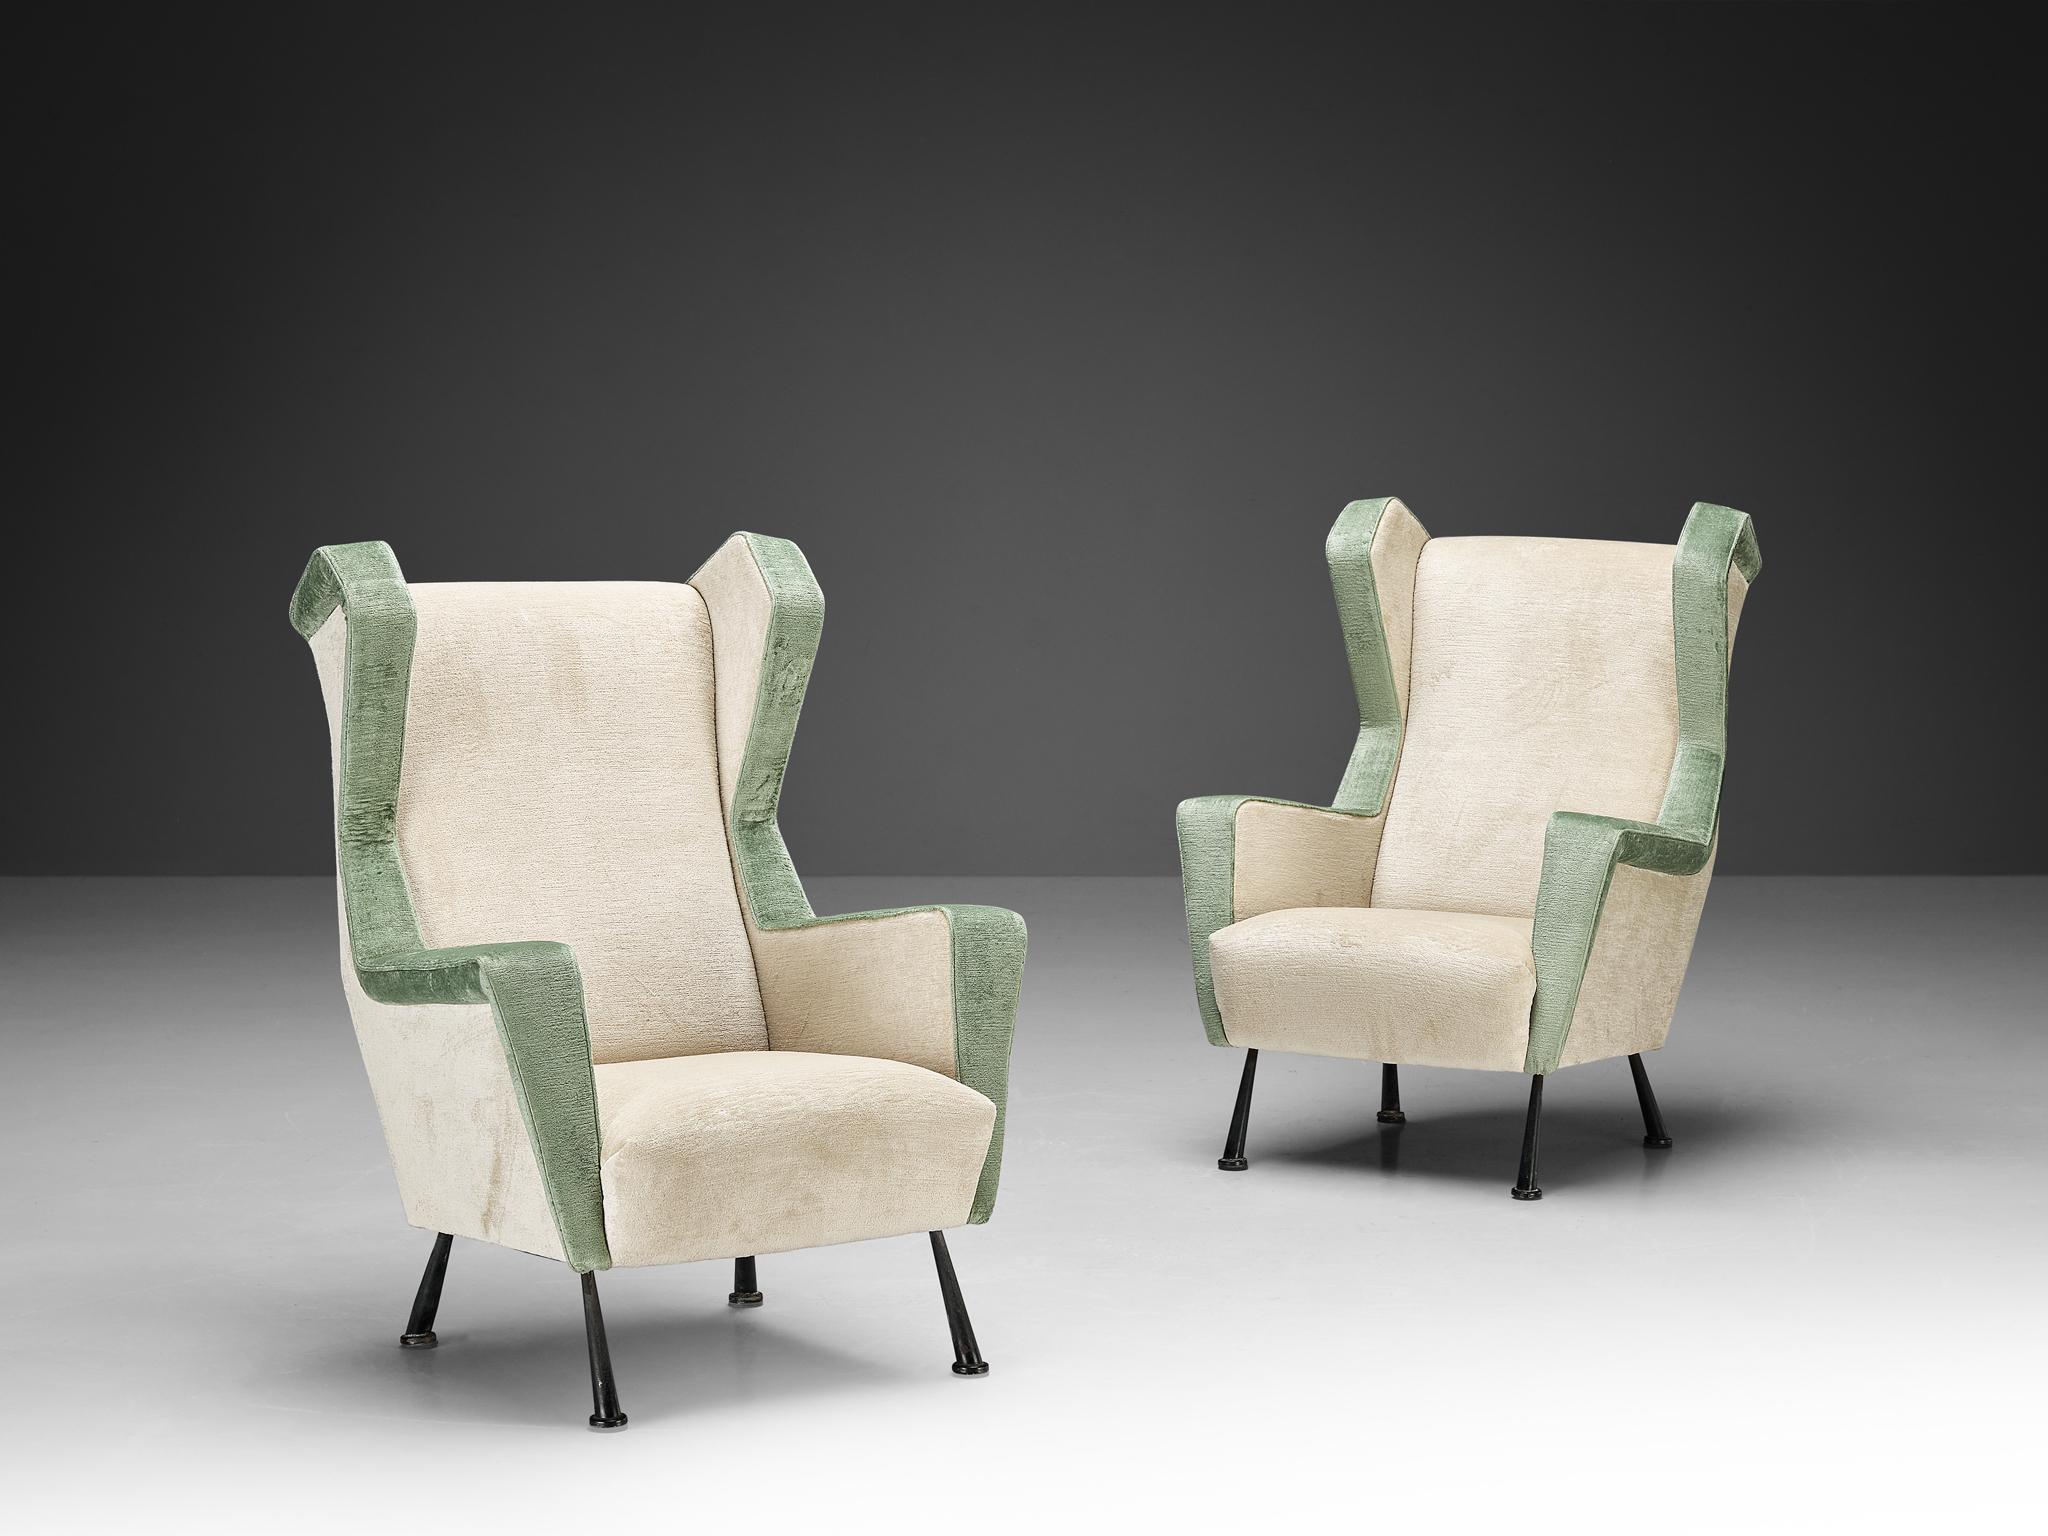 Paar Sessel, Samtpolsterung Pierre Frey 'Georges', beschichtetes Metall, Italien, ca. 1950.

Dieses Set aus kantigen Loungesesseln ist ebenso üppig und großartig wie bequem. Die Stühle haben eine halbhohe Rückenlehne und sind in den Farben Off-White